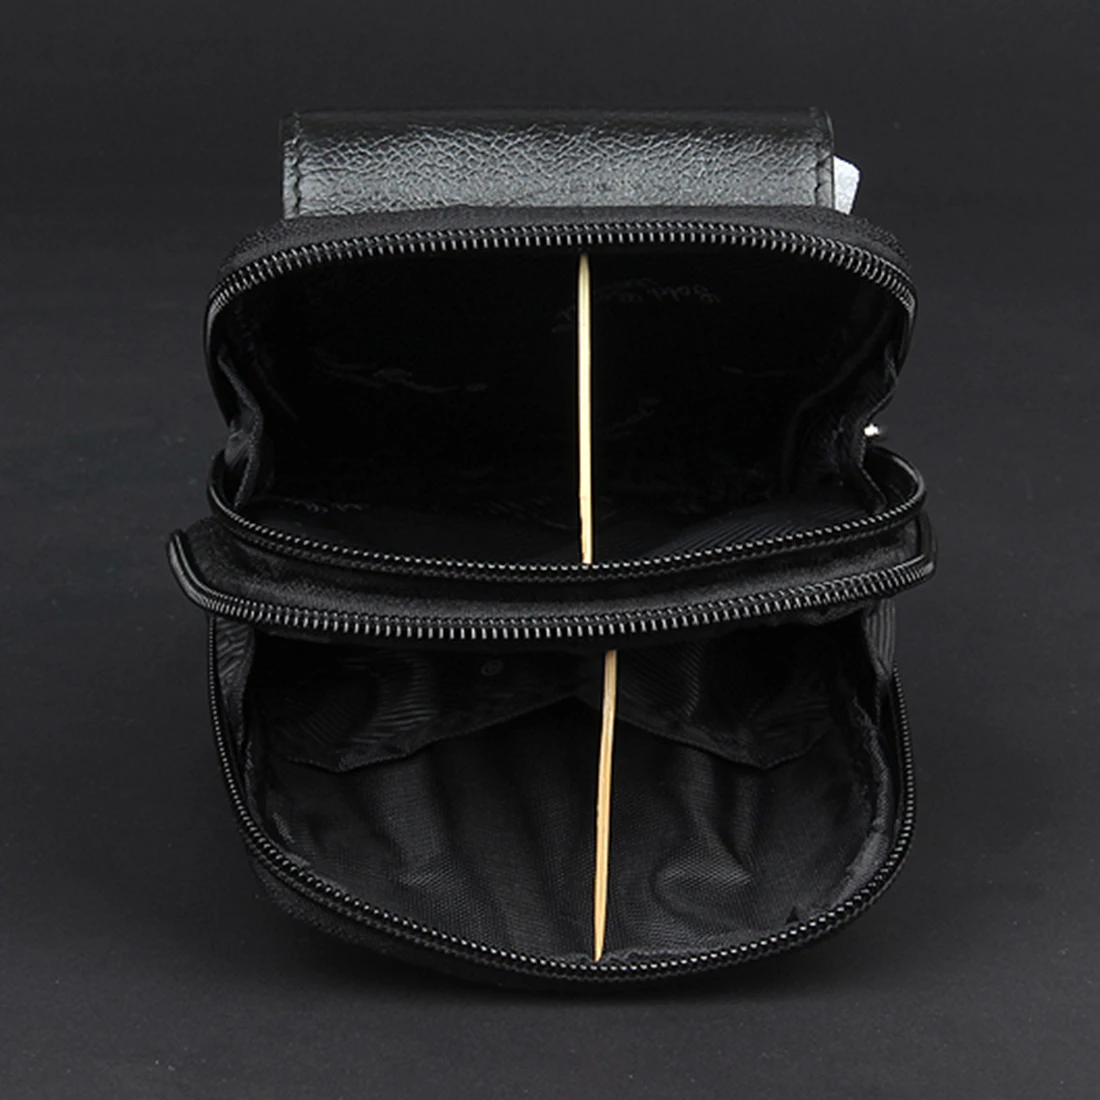 Высокое качество для мужчин Фанни талии сумка карман бум портсигар чехол повседневное пояса из натуральной кожи сотовый/Сумка для